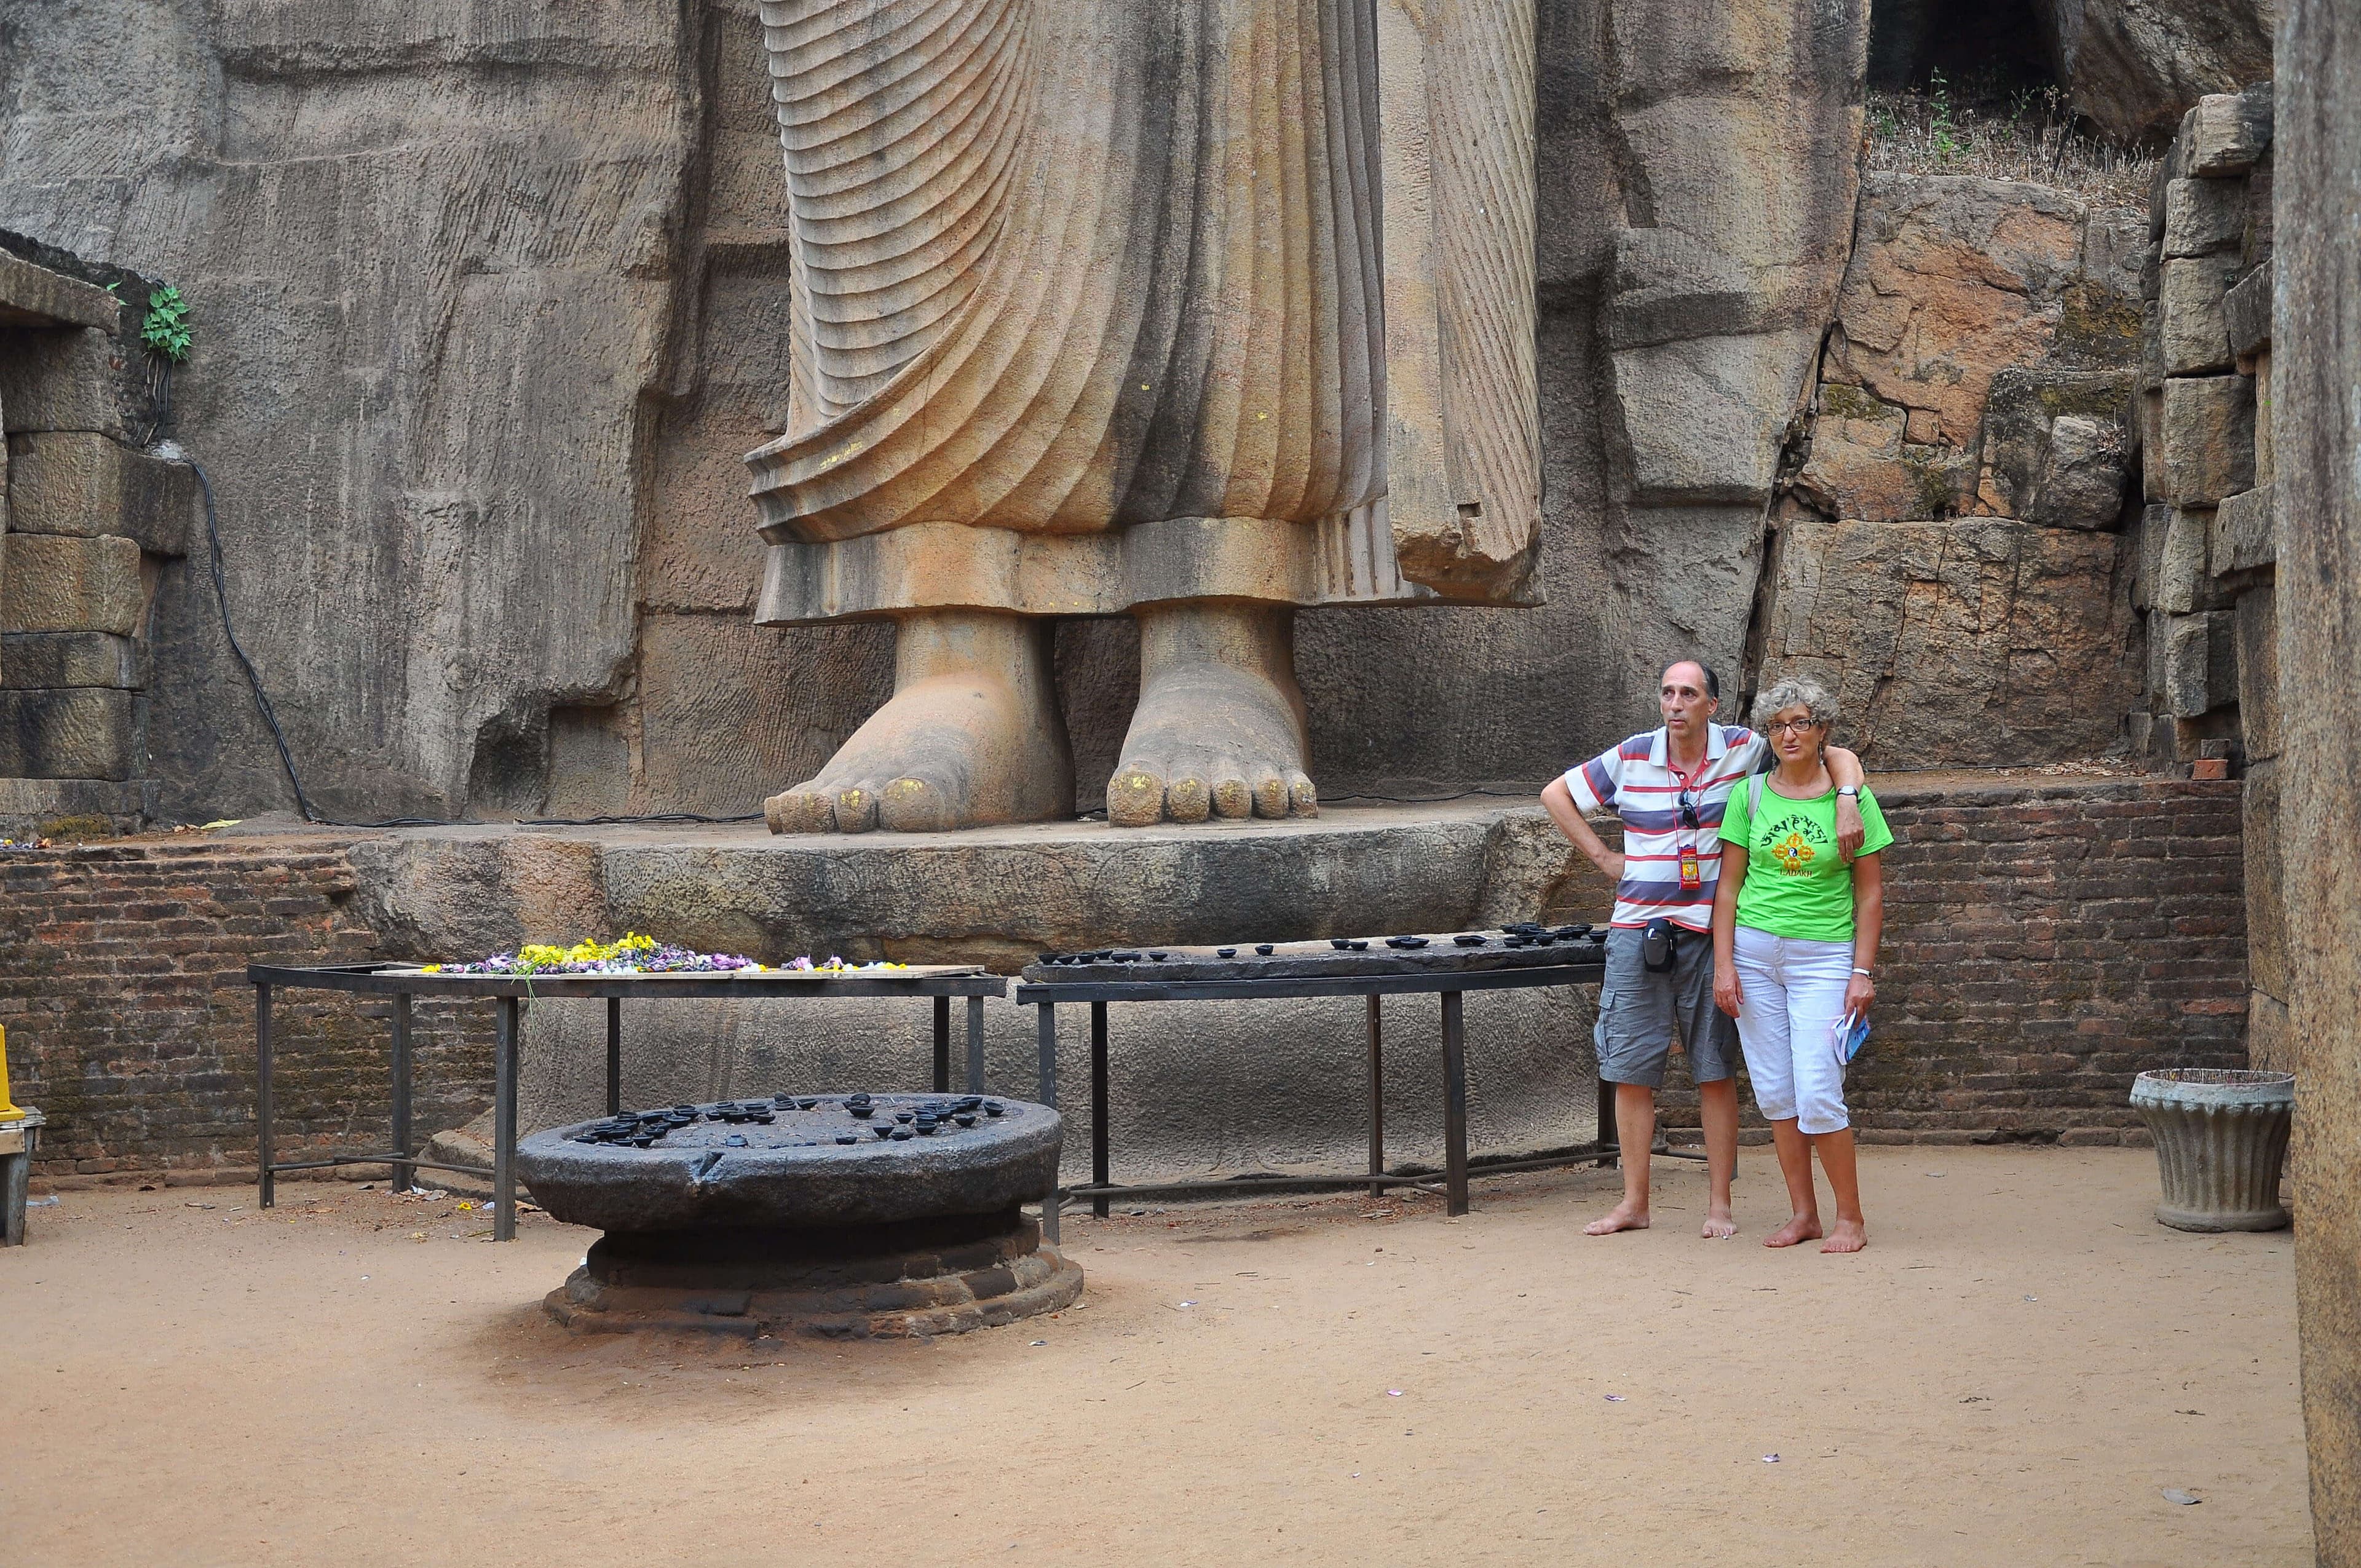 The tourist get a photograph near the tallest Avukana Buddha statue in Anuradhapura in Sri Lanka